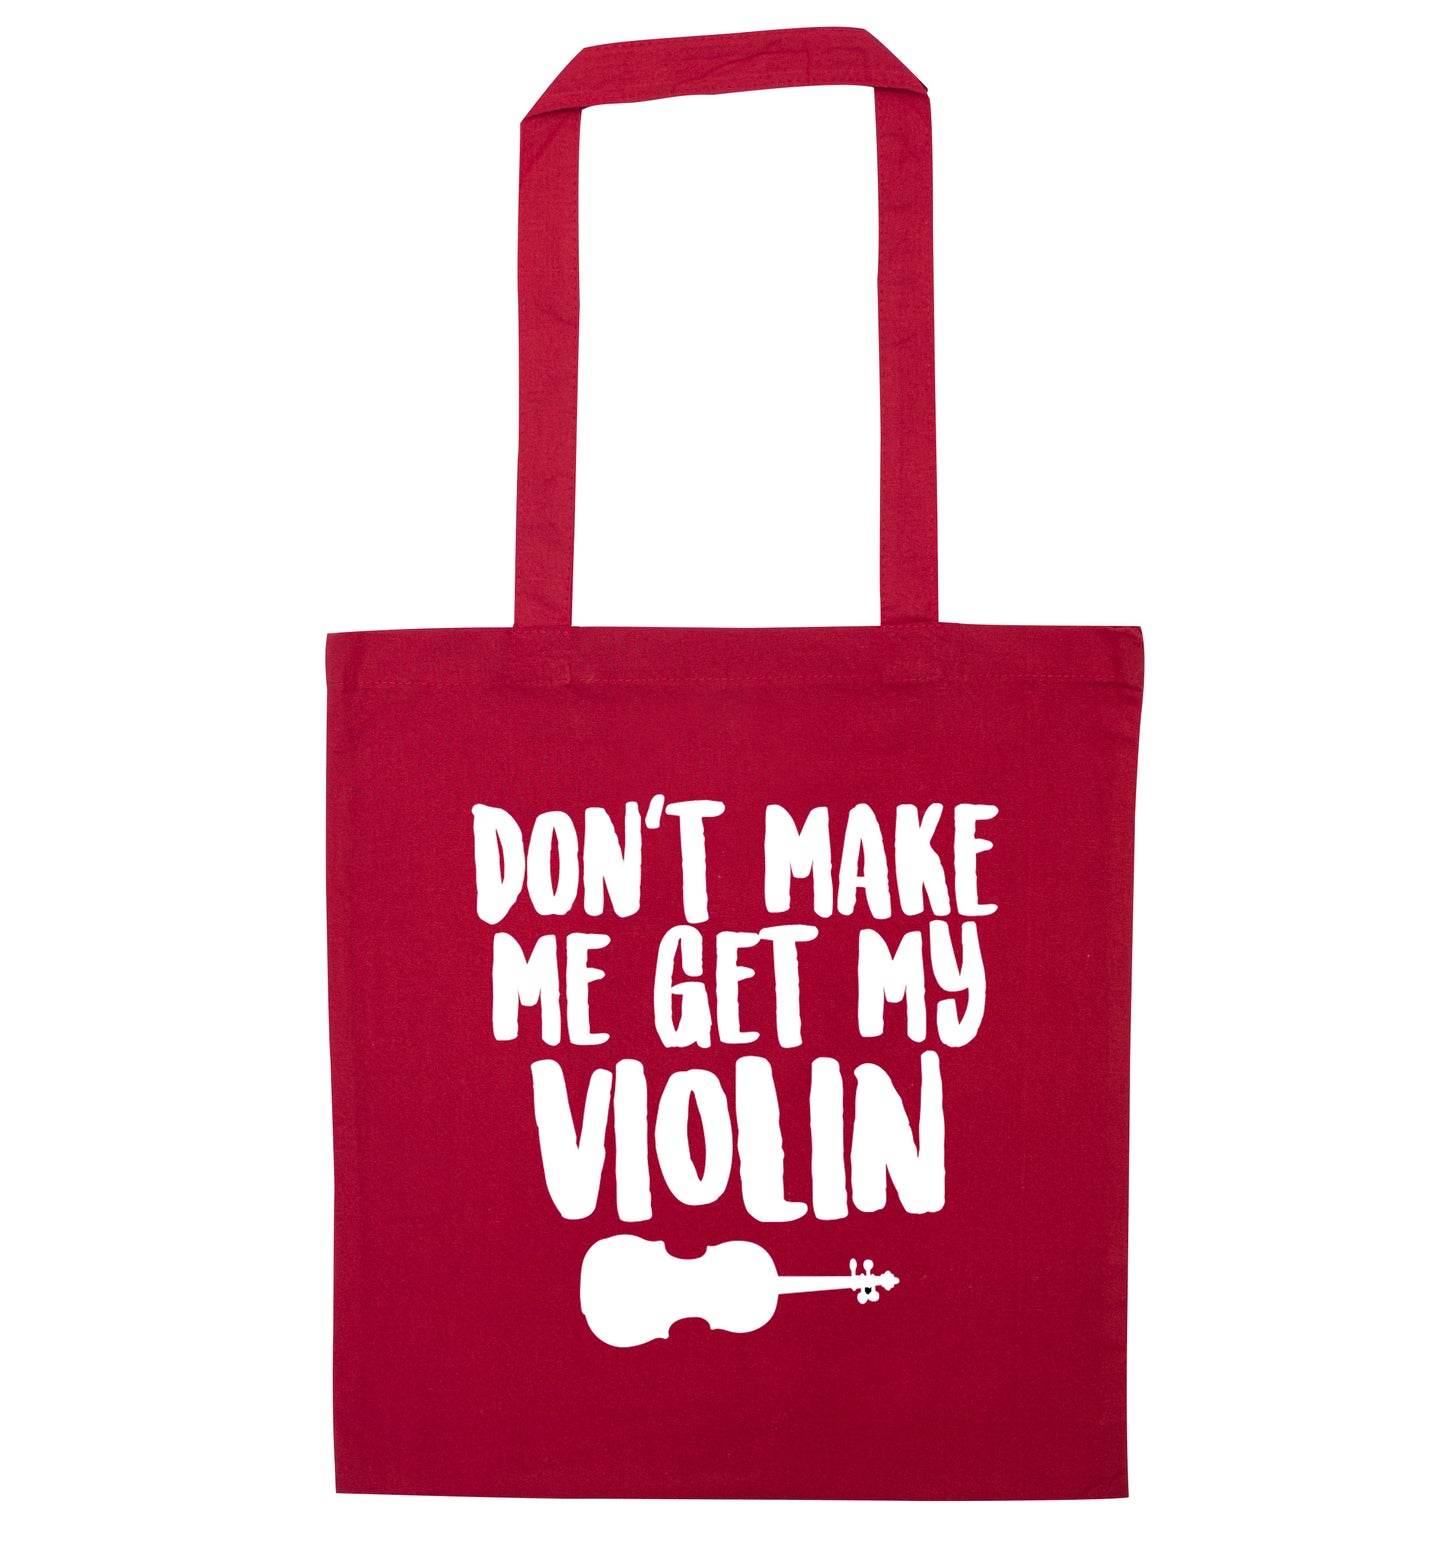 Don't make me get my violin red tote bag